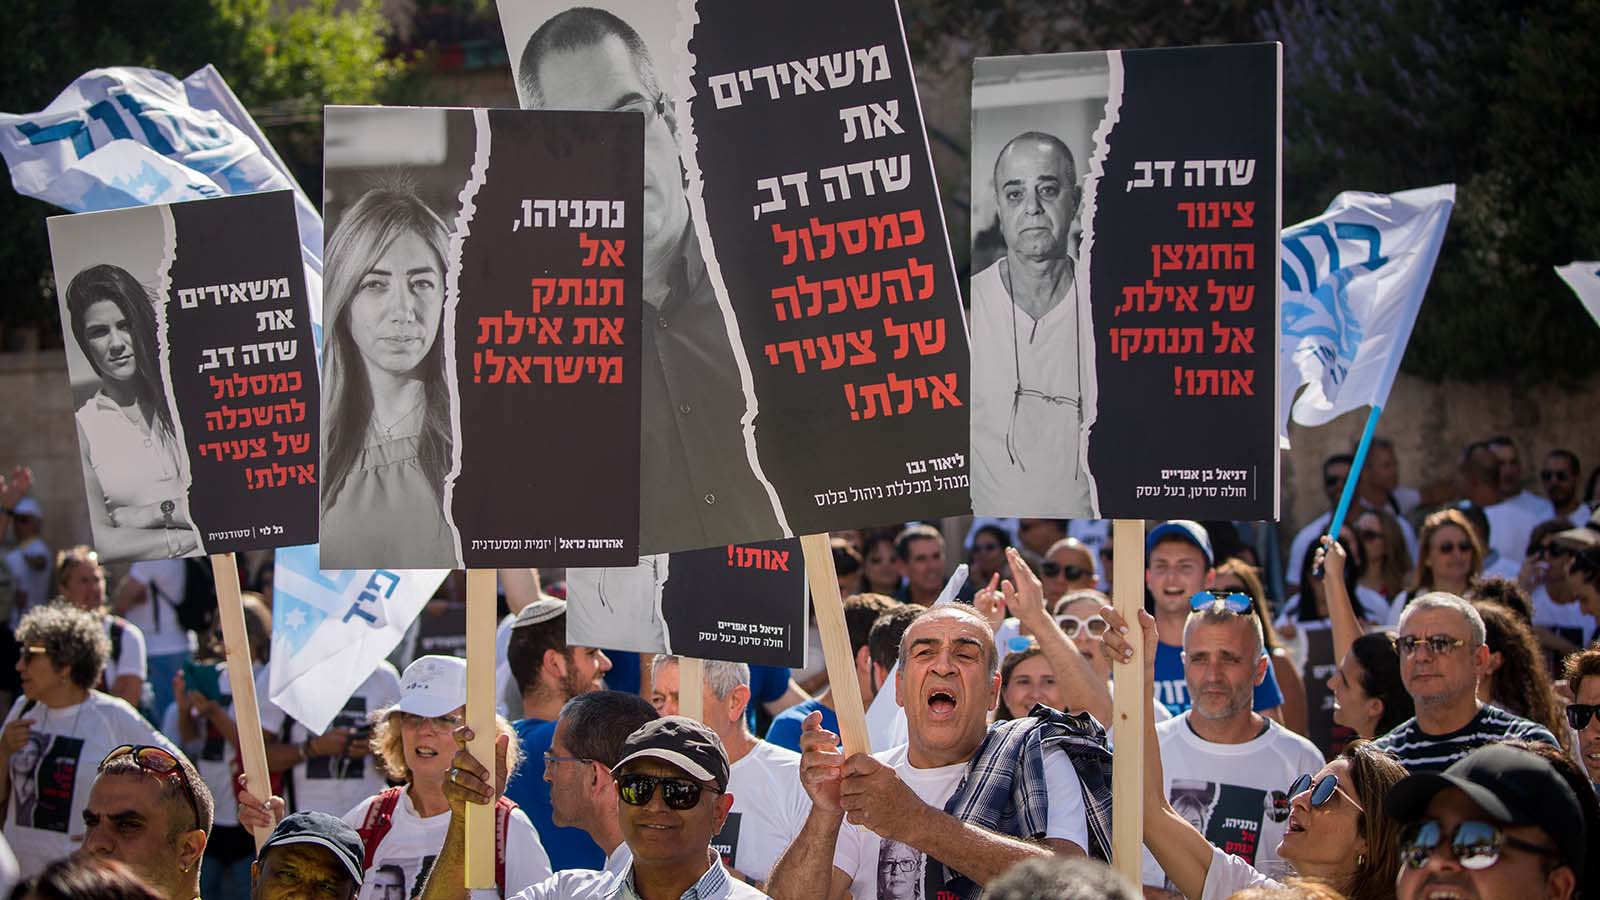 הפגנת תושבי אילת וחבל אילות מול בית ראש הממשלה בירושלים במחאה על סגירת שדה דב, 17 ביוני 2019 (צילום: יונתן זינדל/פלאש90)